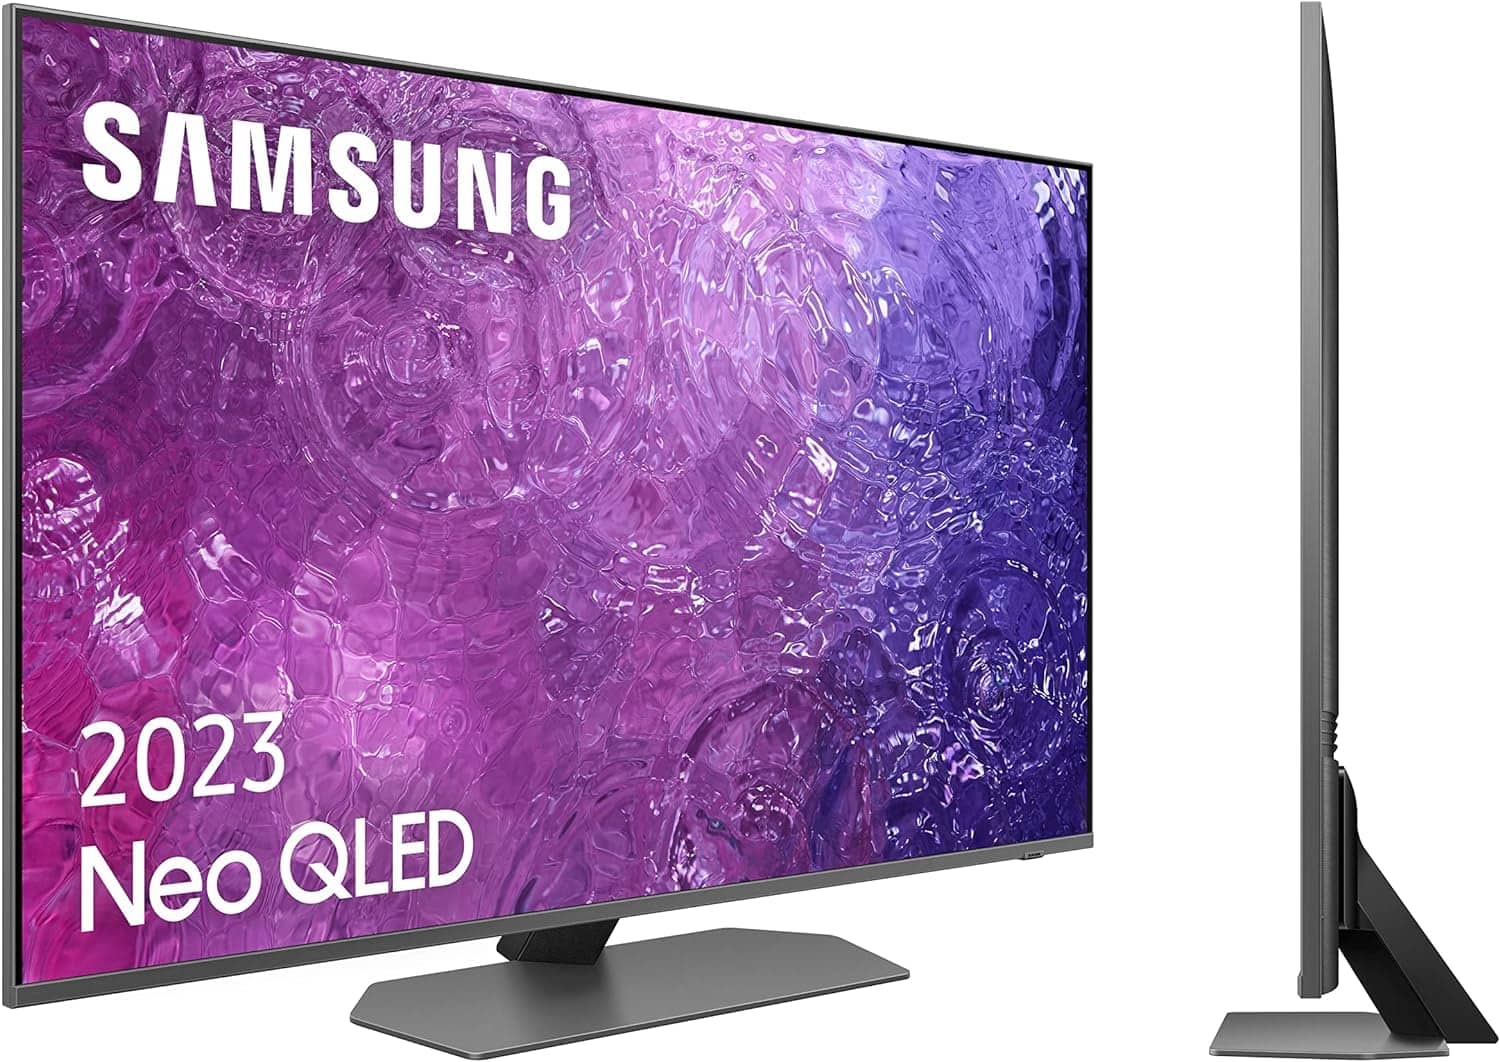 Televisor Samsung TV Neo QLED 4K 2023 43QN90C Smart TV de 43" con Quantum Matrix Technology